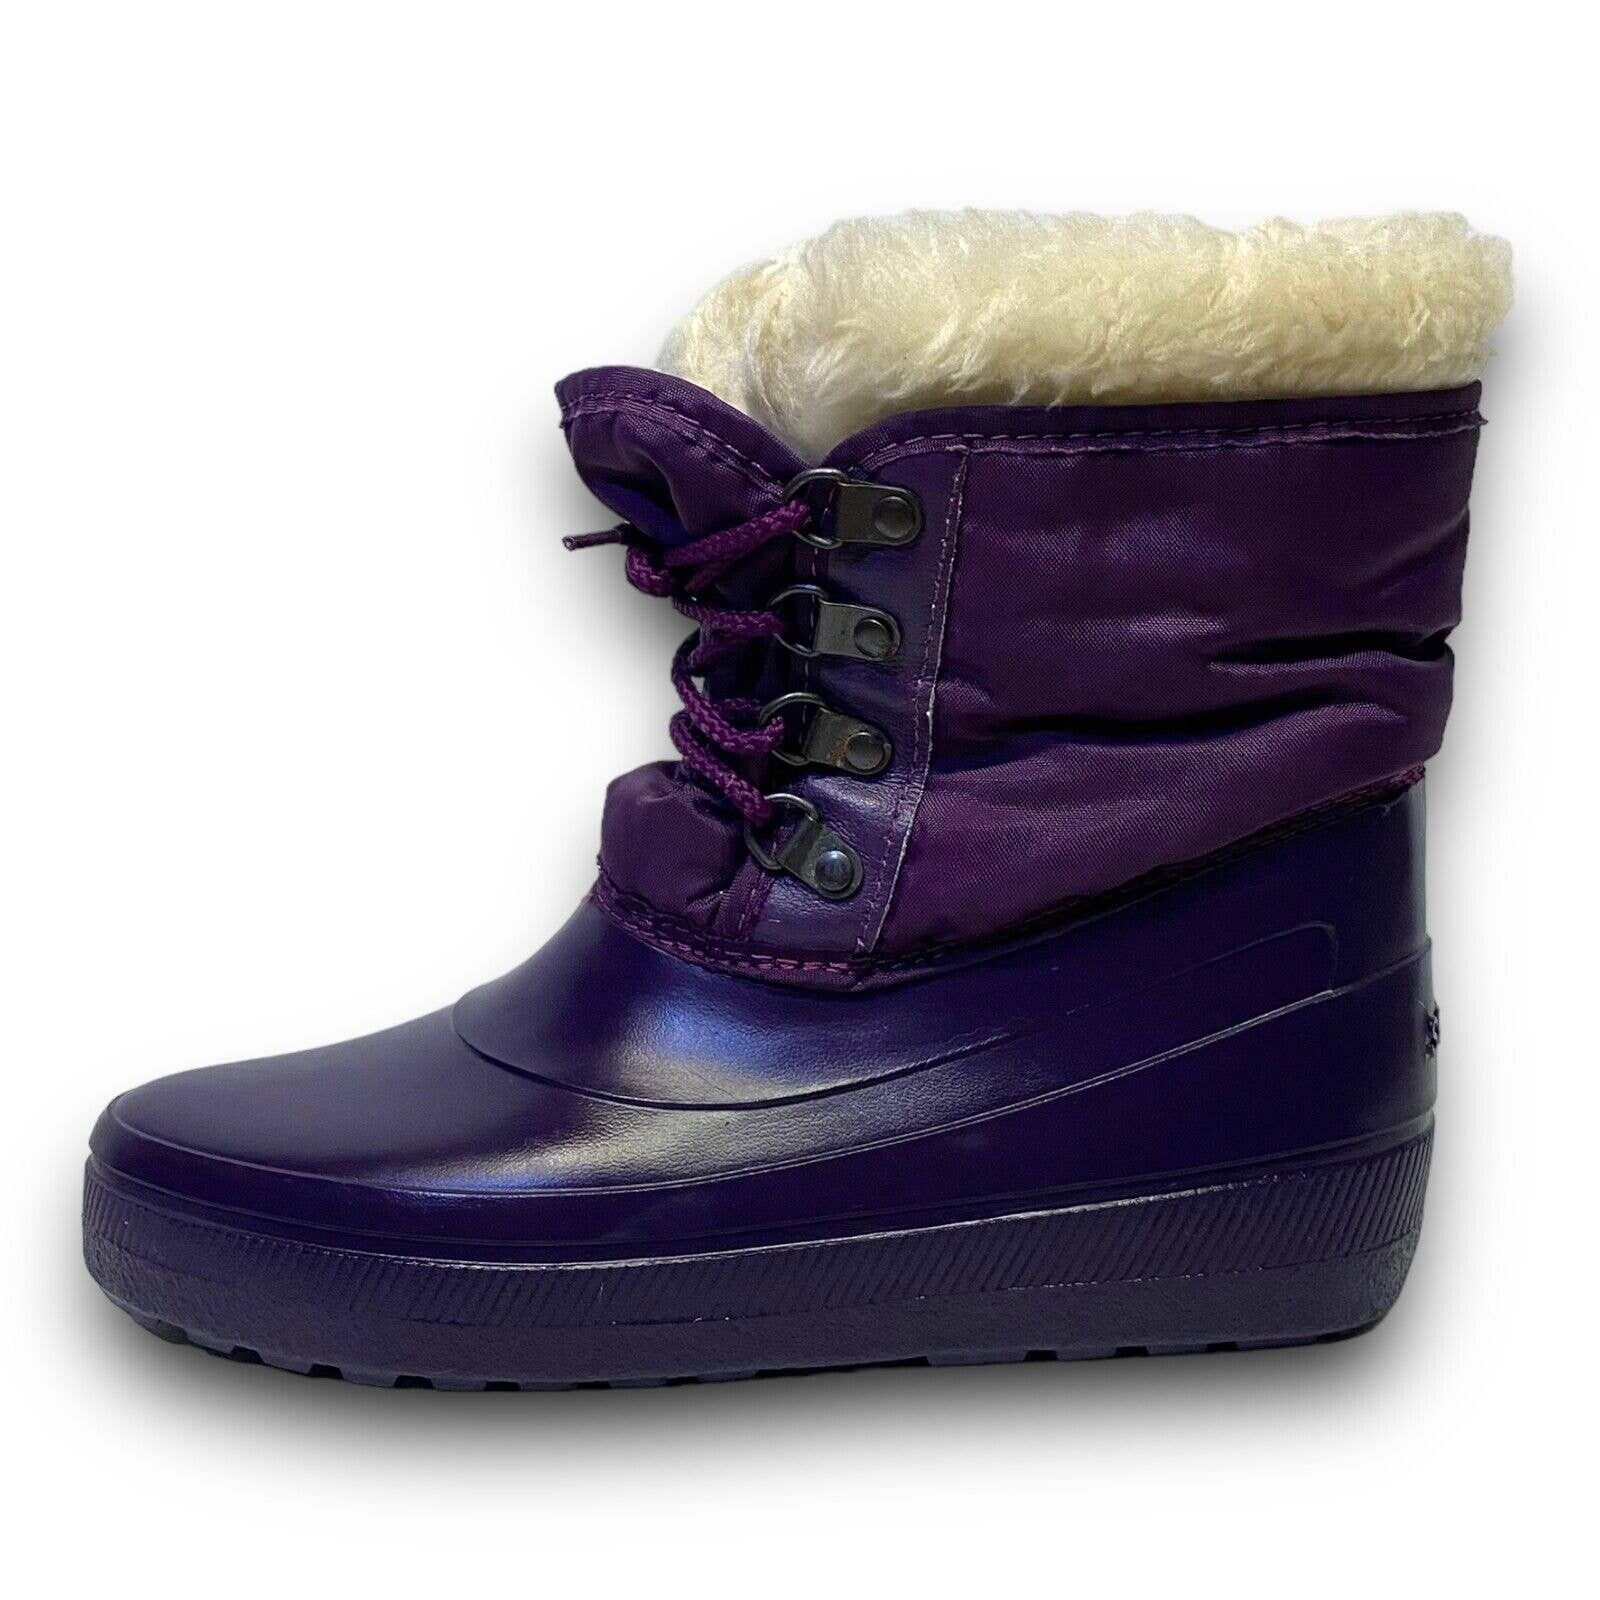 Vintage Vintage Sorel Purple Fur Lined Rubber Winter Rain Snow Boots Size US 5 / IT 35 - 3 Thumbnail